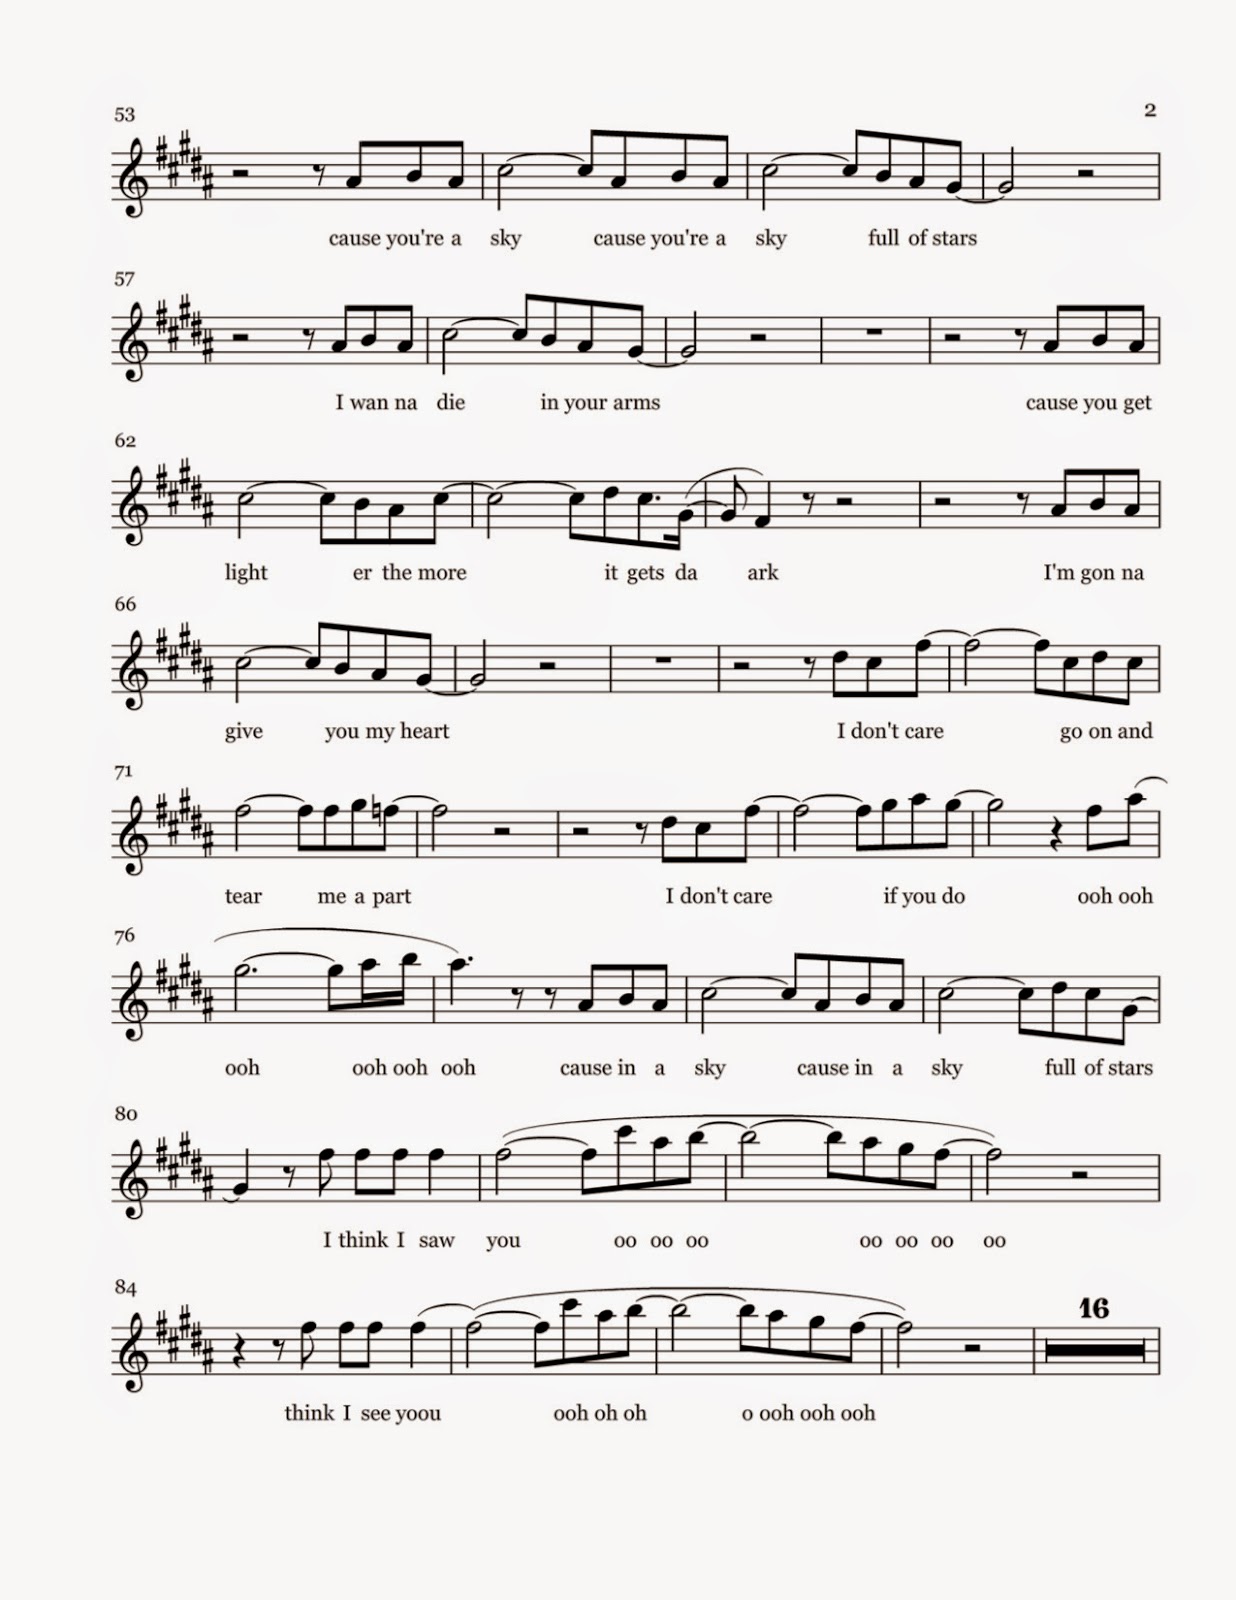 Flute Sheet Music: A Sky Full of Stars - Sheet Music